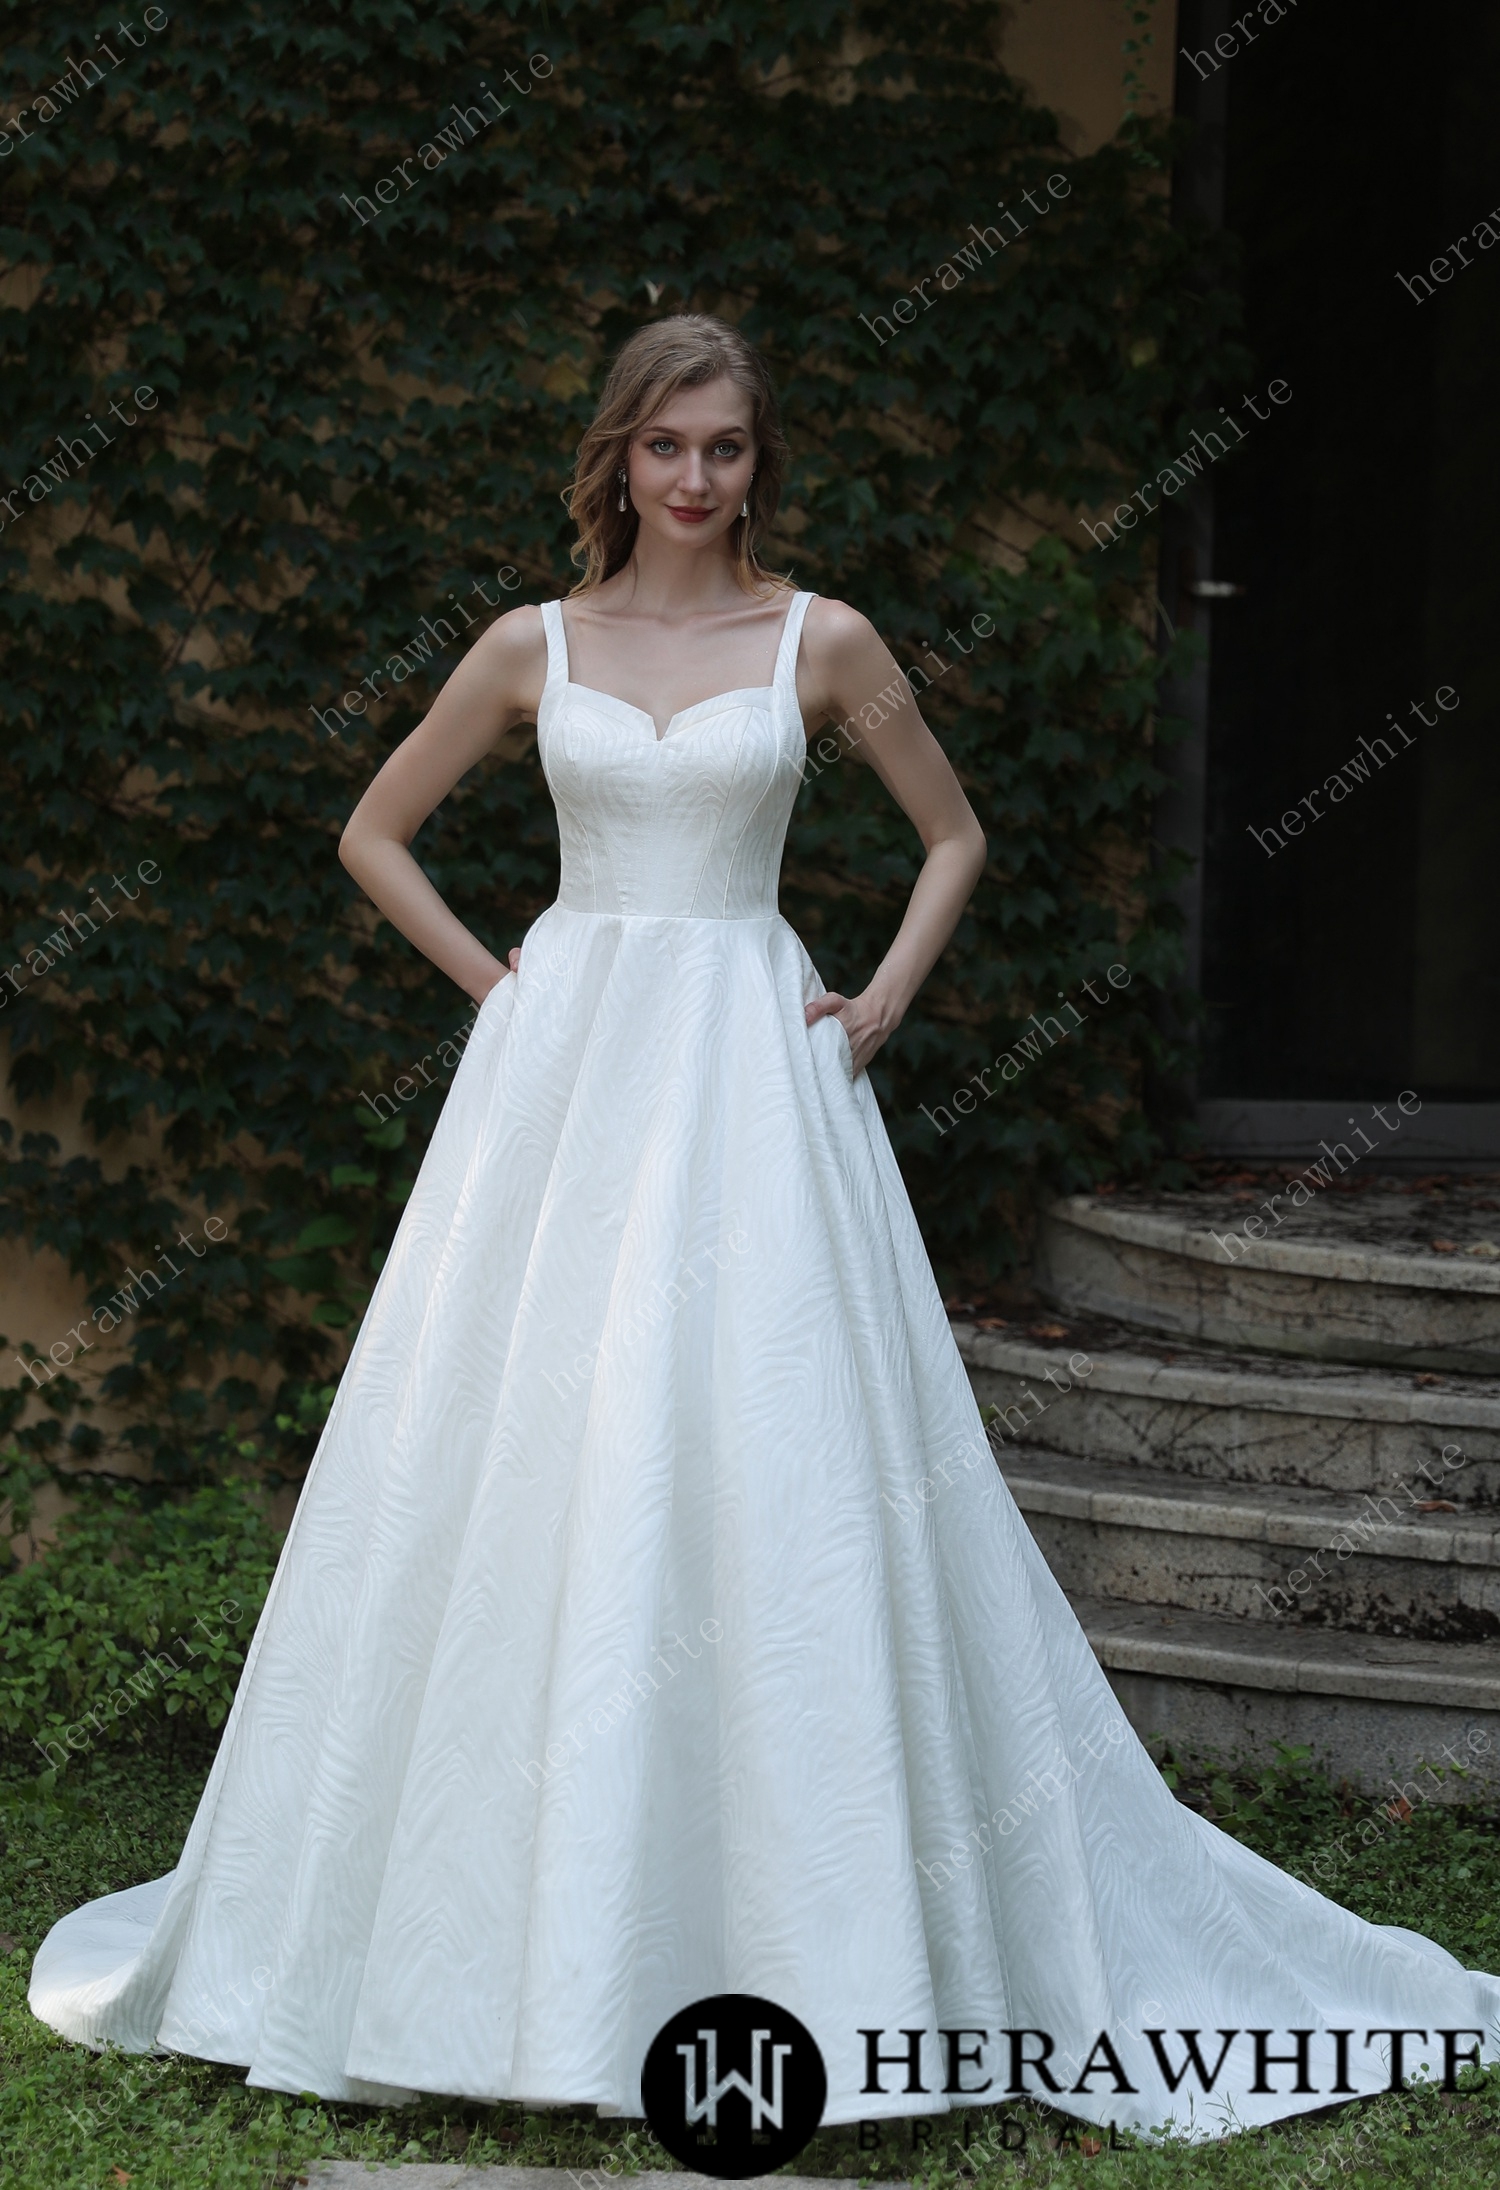 Minimalist Chic Modern Ballgown Shoulder Straps Wedding Dress